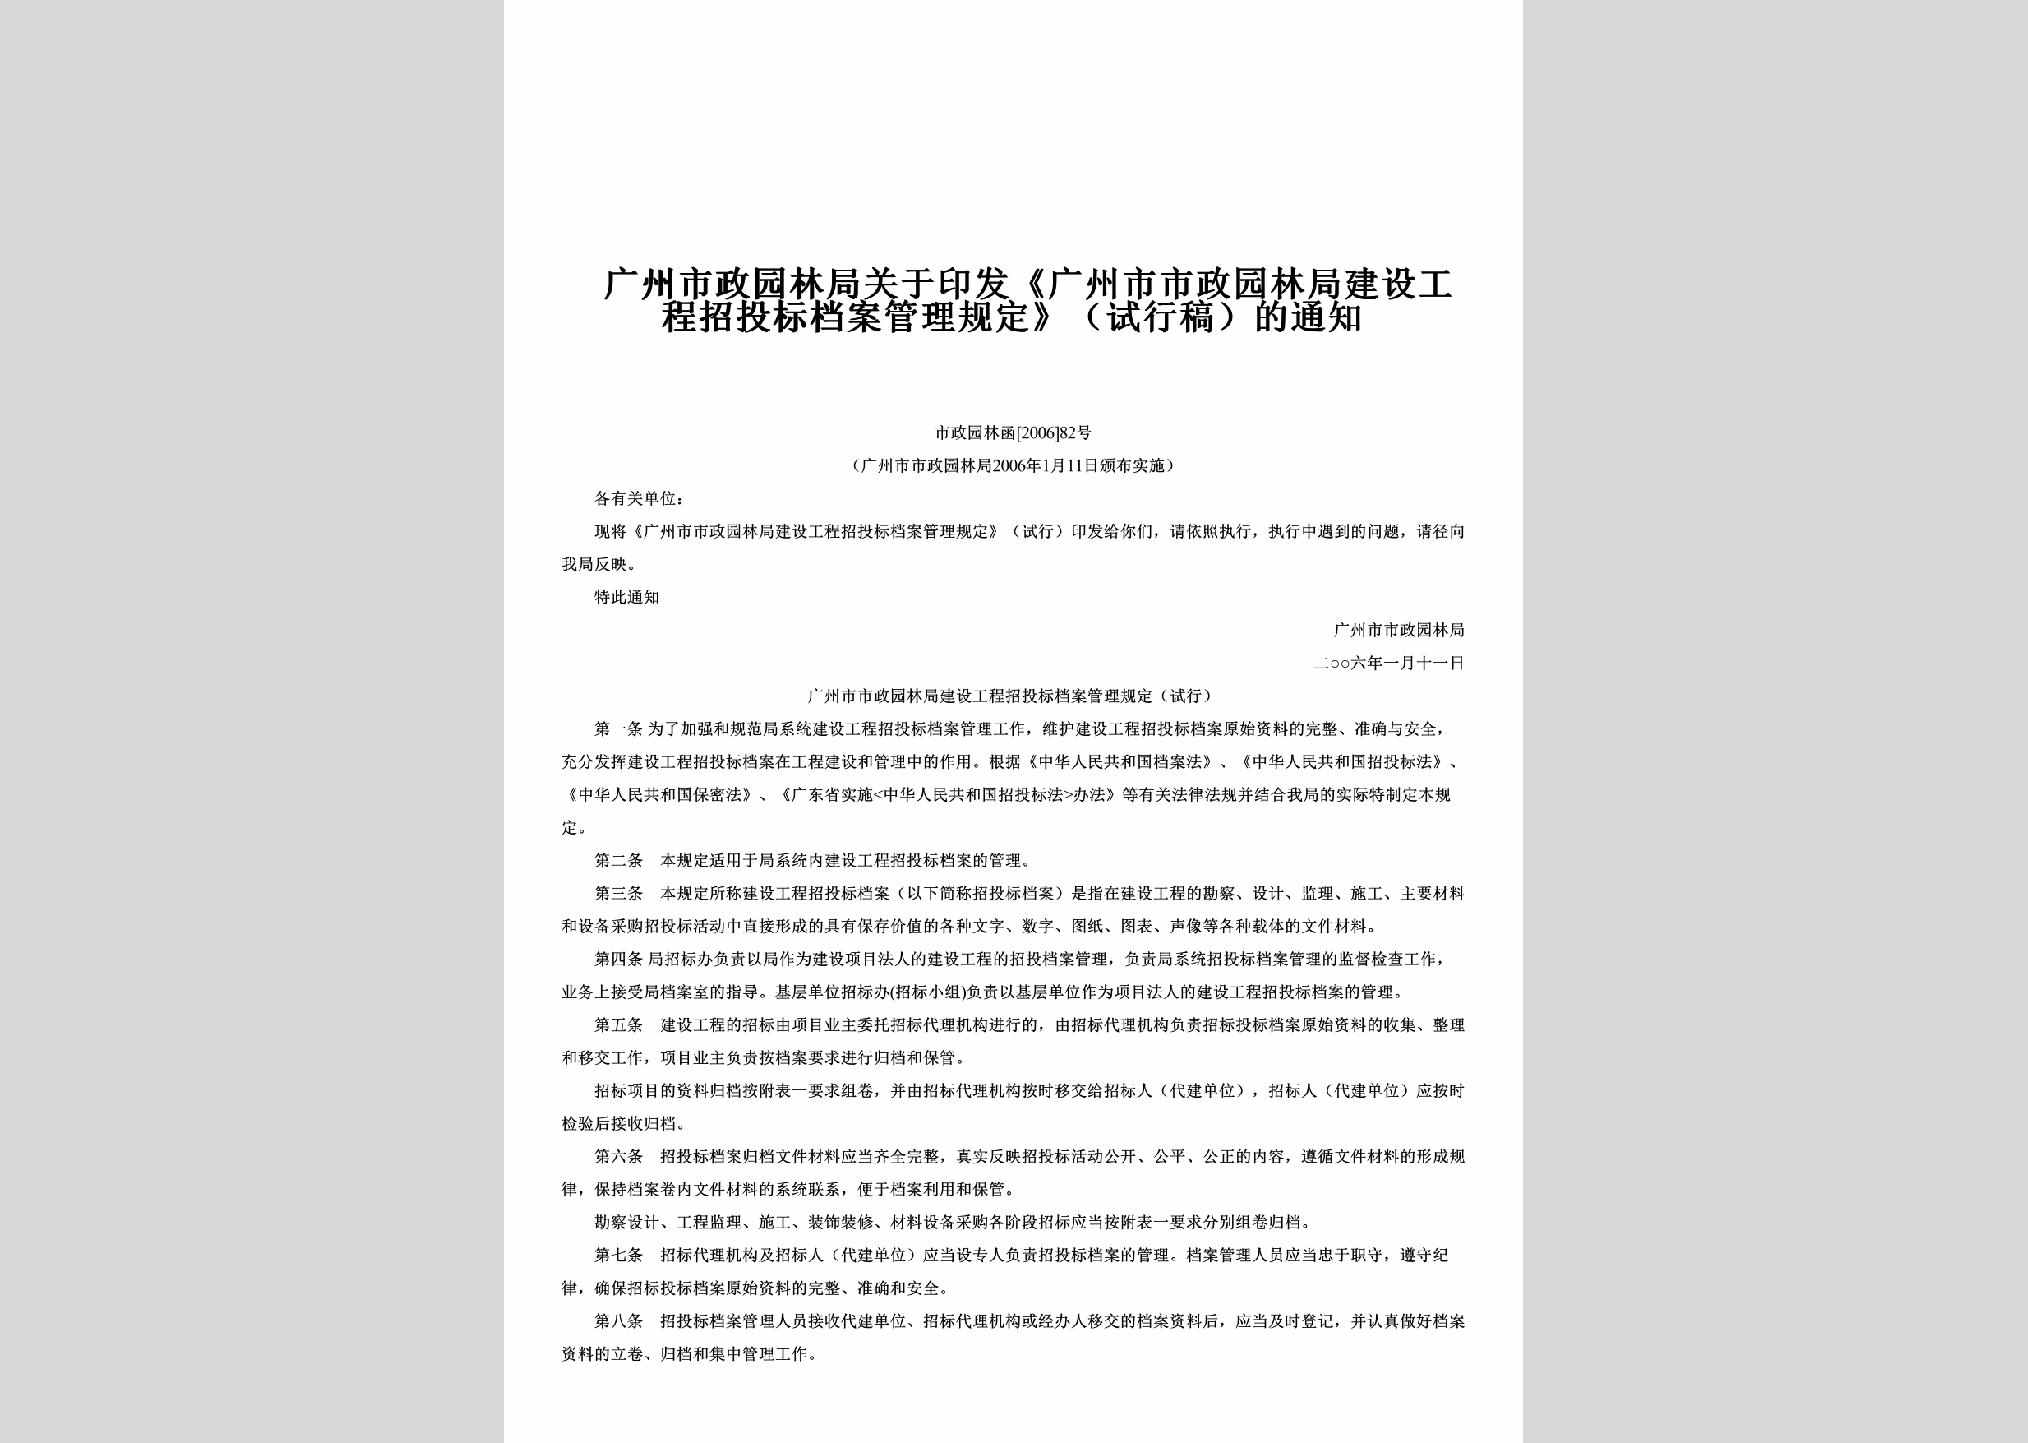 市政园林函[2006]82号：关于印发《广州市市政园林局建设工程招投标档案管理规定》（试行稿）的通知